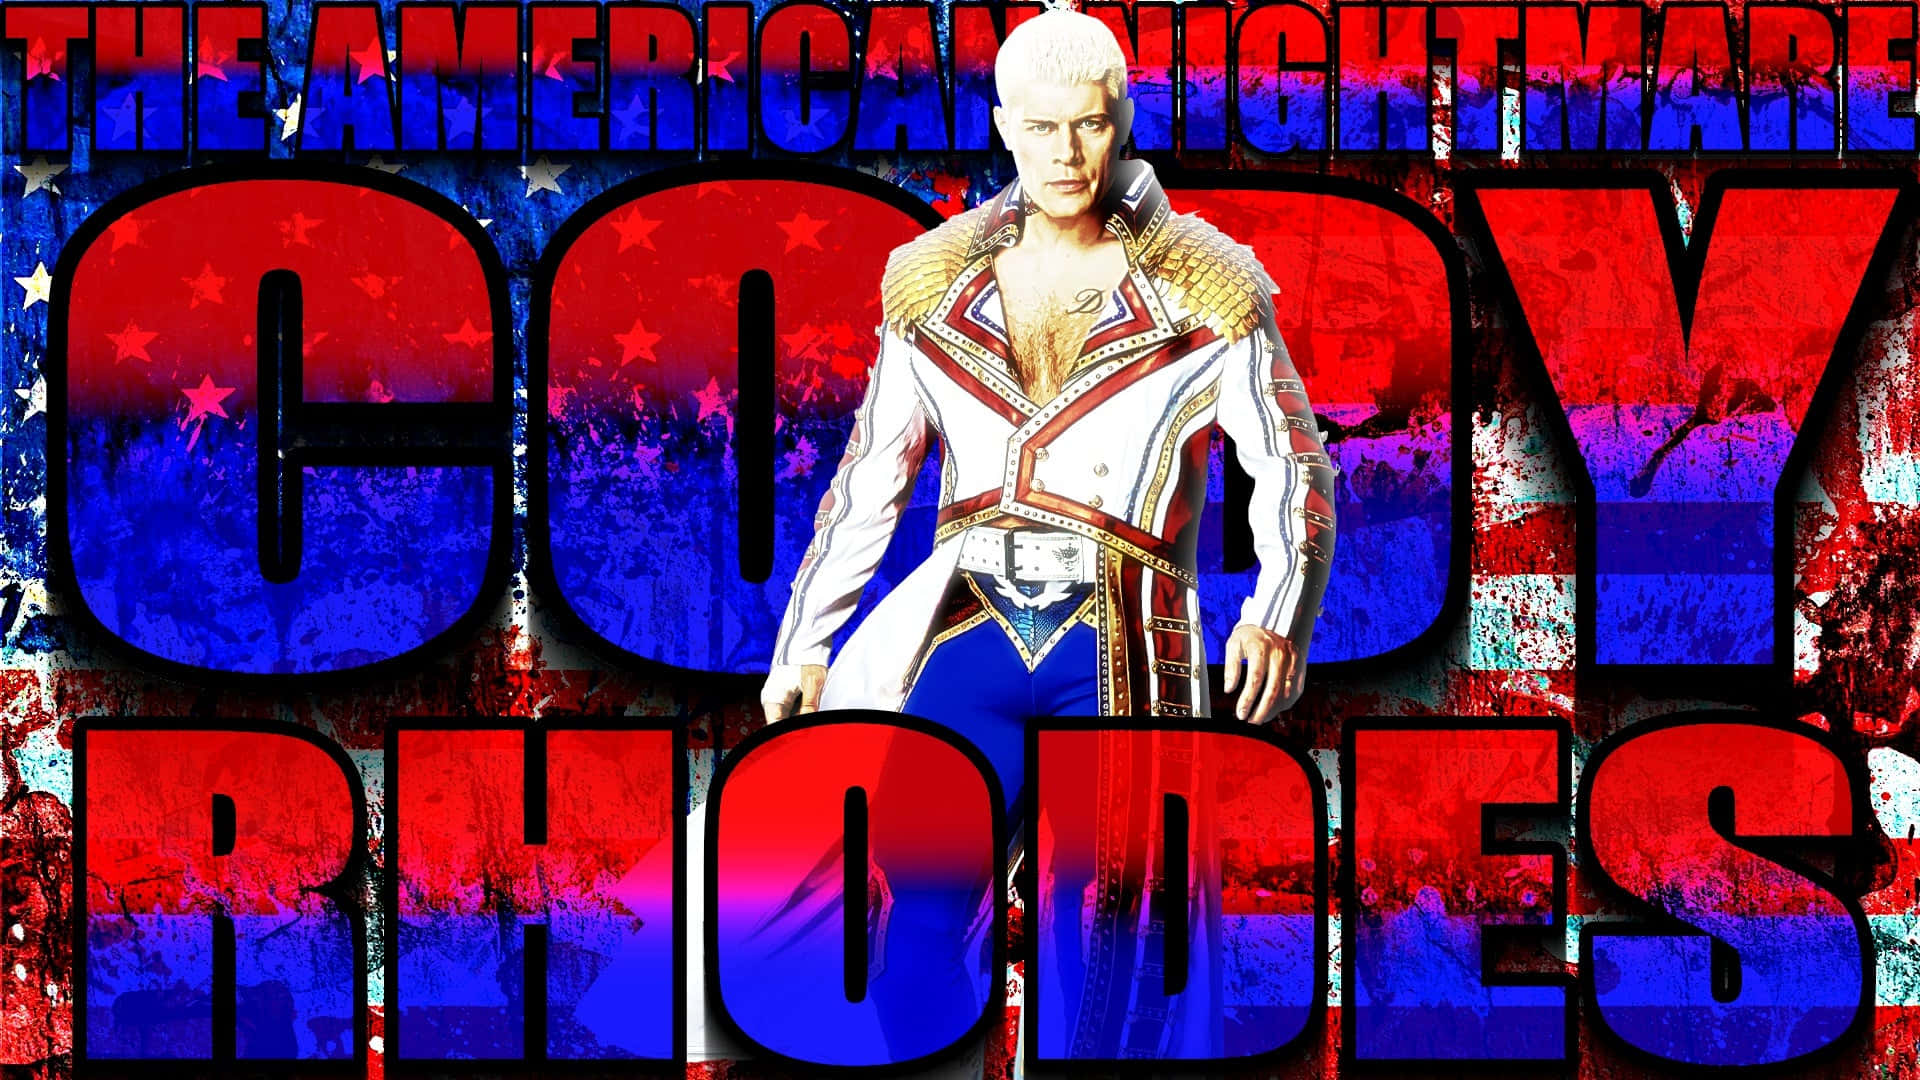 Artede Un Fanático Del Luchador Estadounidense Cody Rhodes Para Fondos De Pantalla De Computadora O Celular. Fondo de pantalla